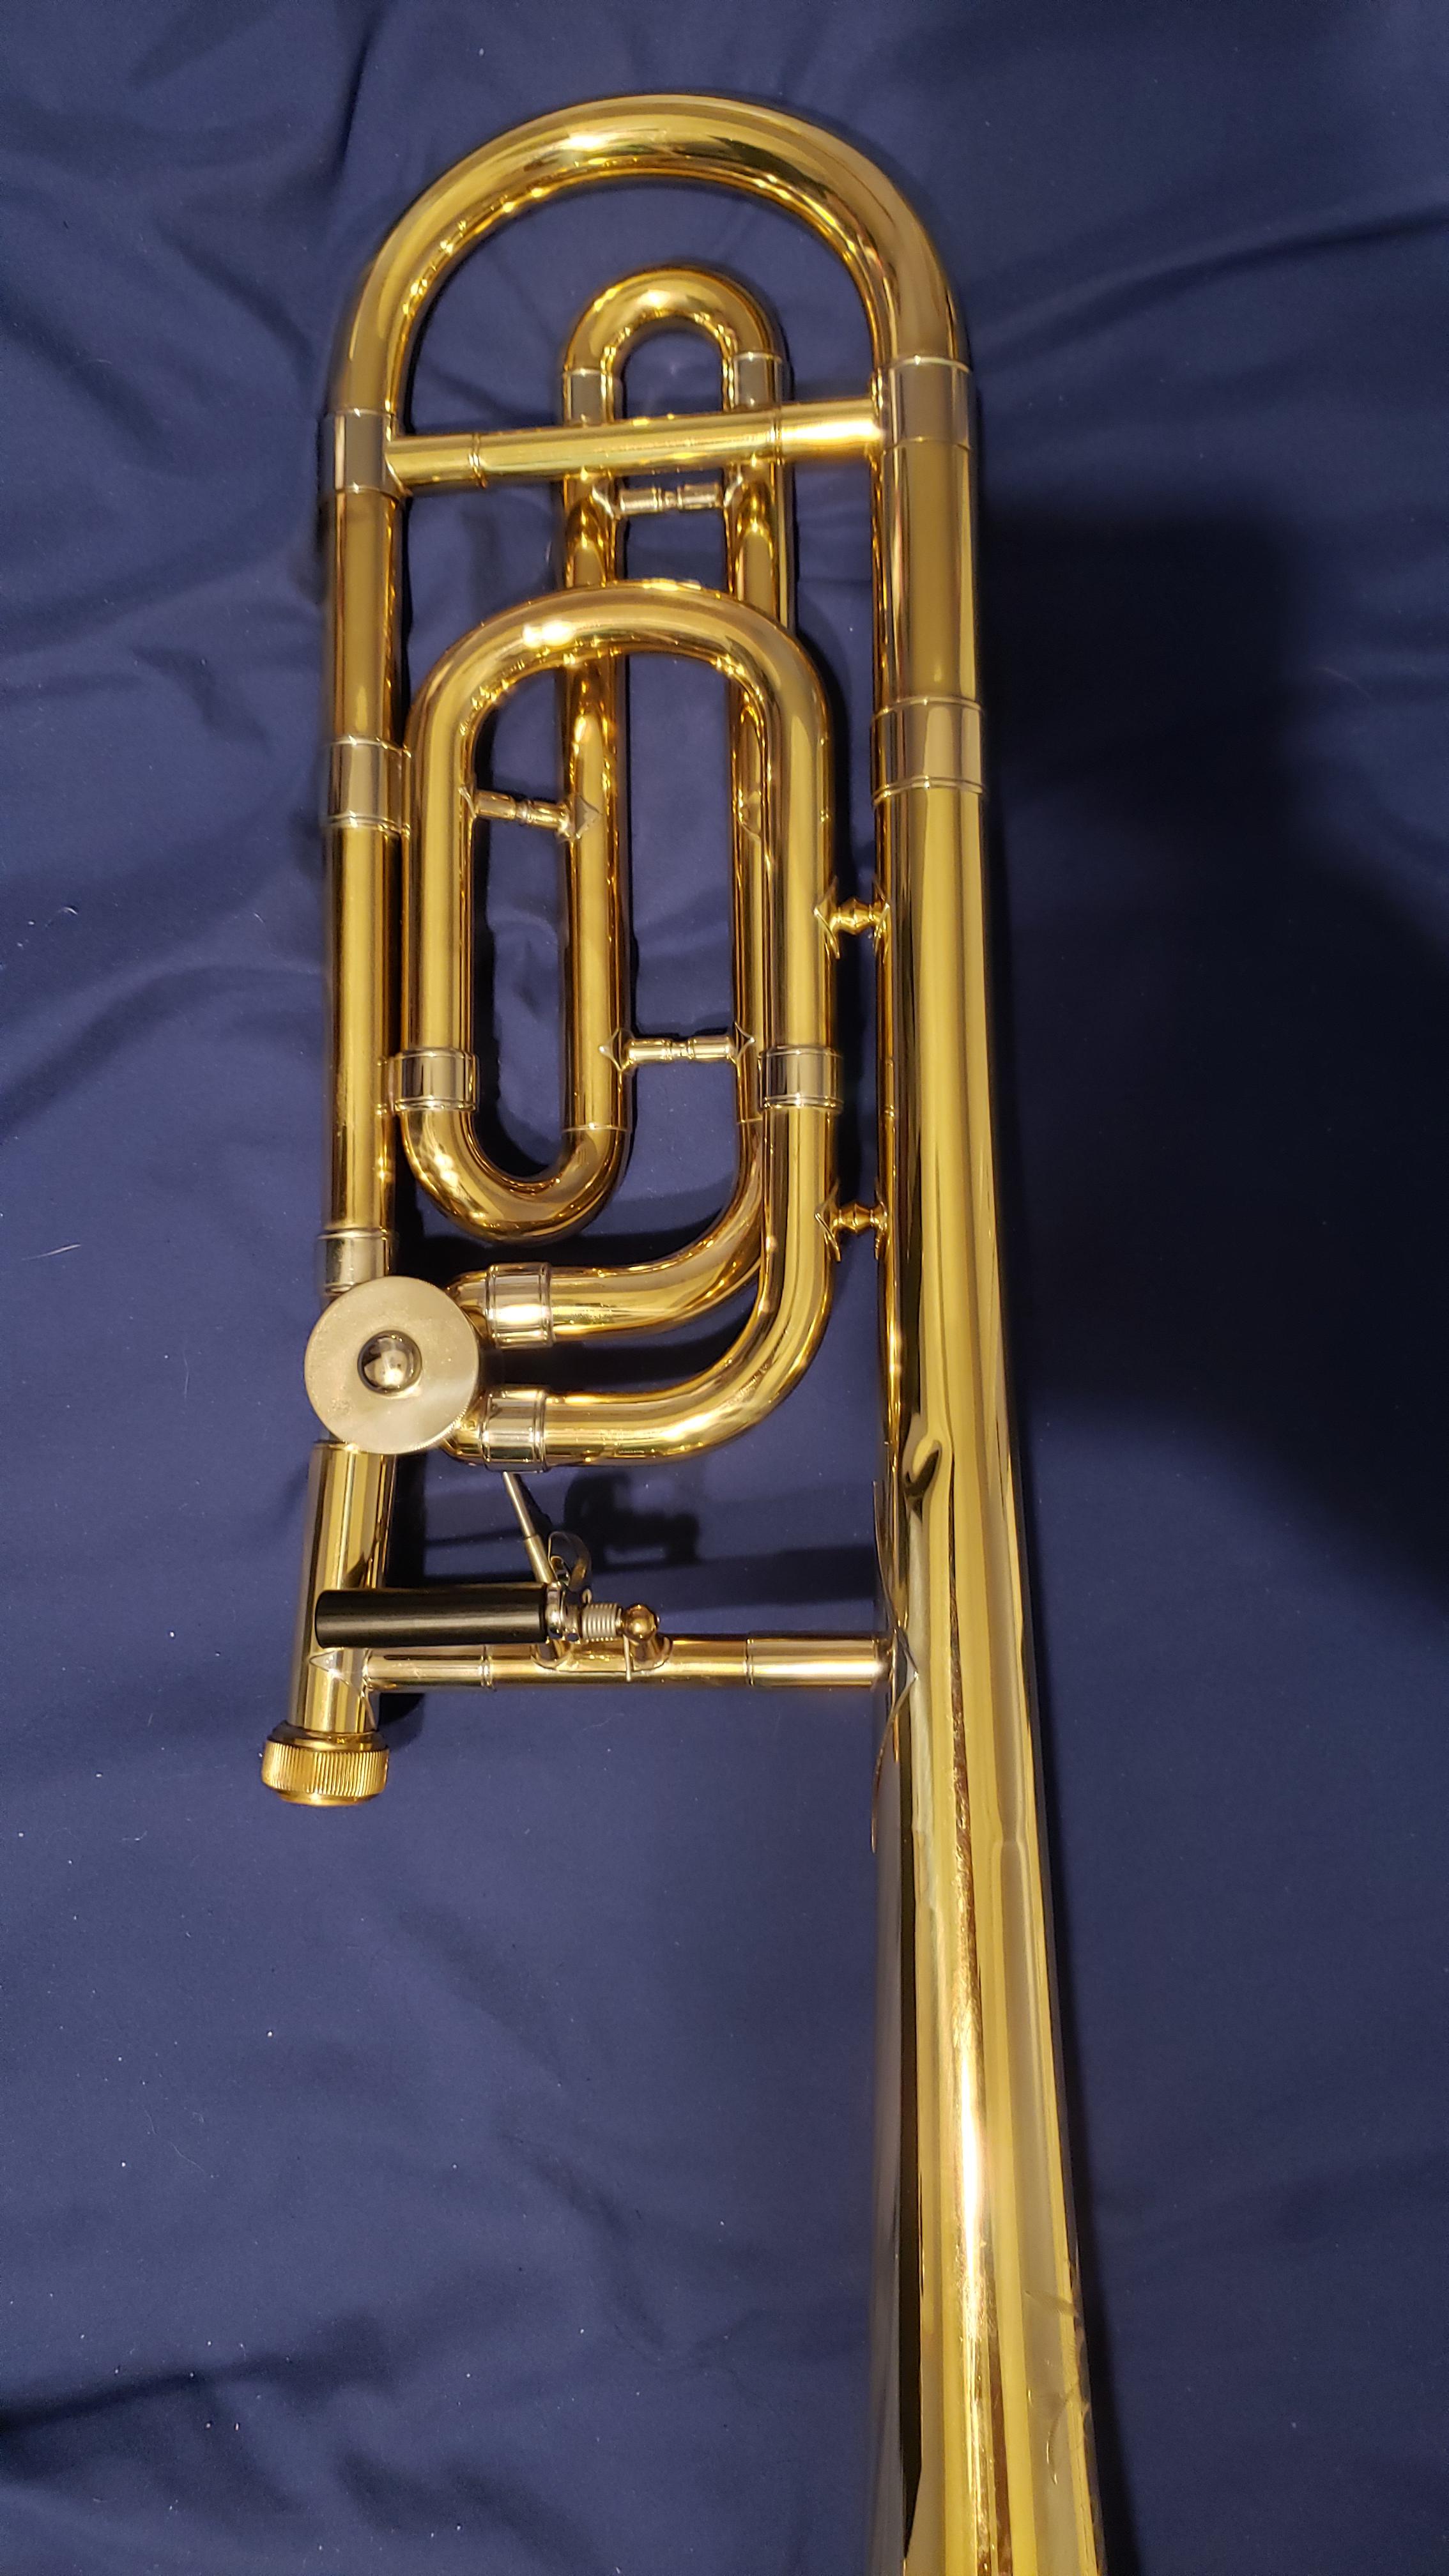 Olds trumpet serial